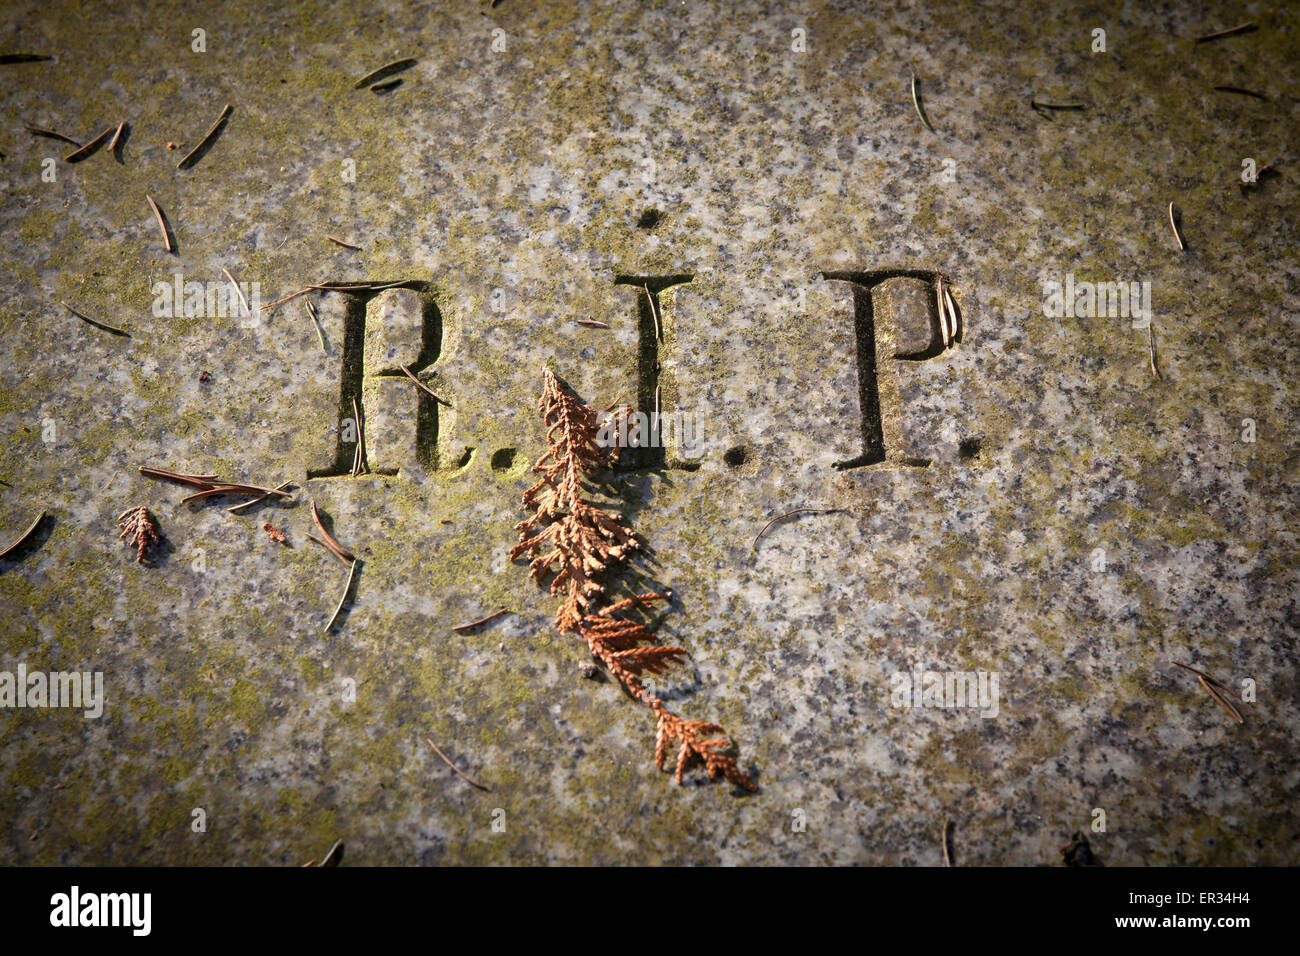 Europa, Deutschland, Koeln, auf dem Melatenfriedhof, Grabplatte mit der Inschrift R.I.P. -  Rest in Peace, Ruhe in Frieden. -    Stock Photo